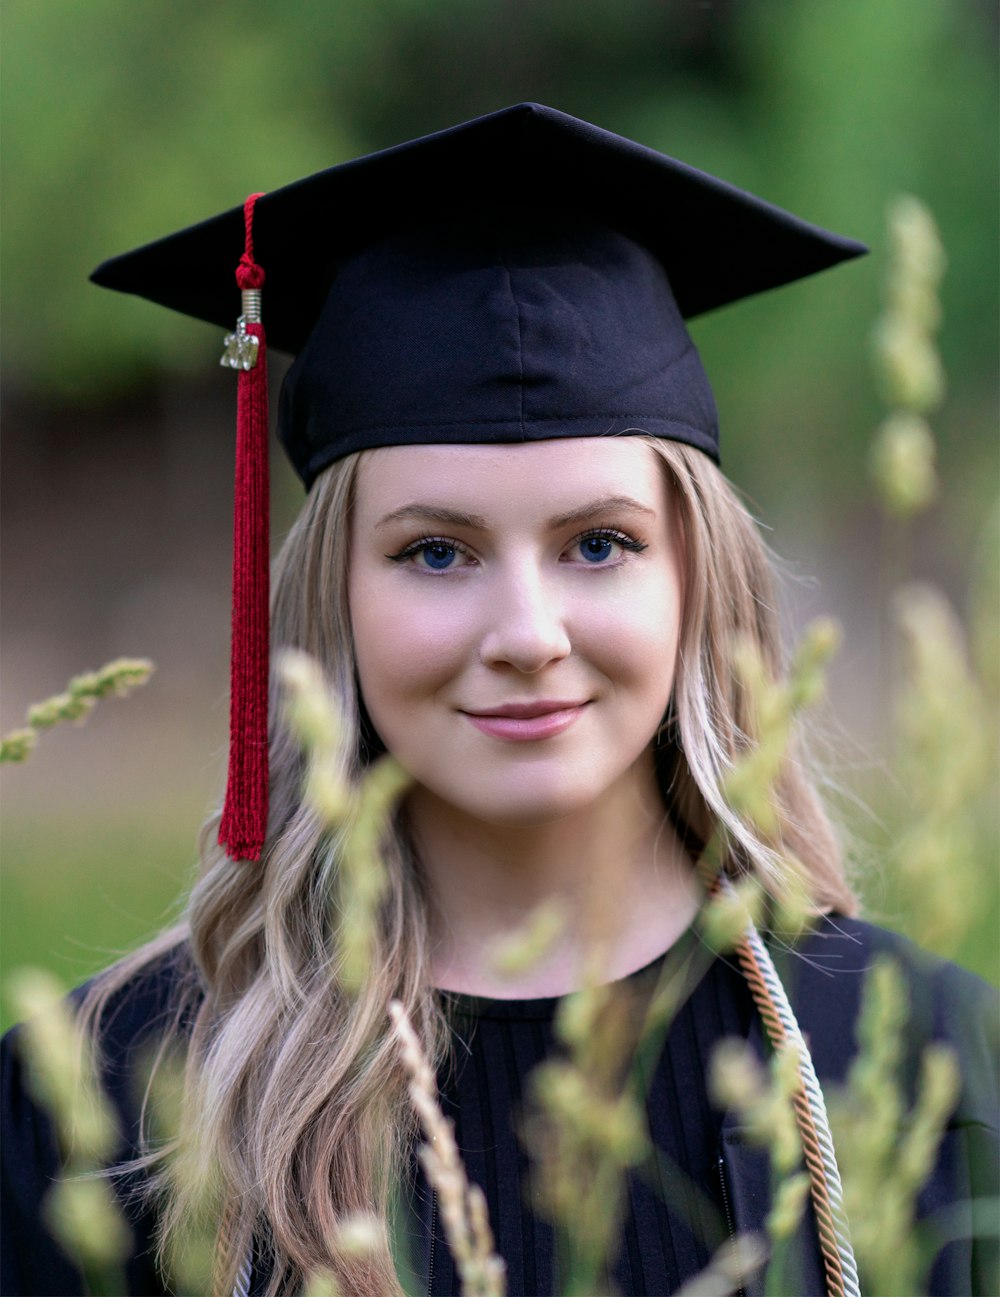 smiling girl wearing academic dress